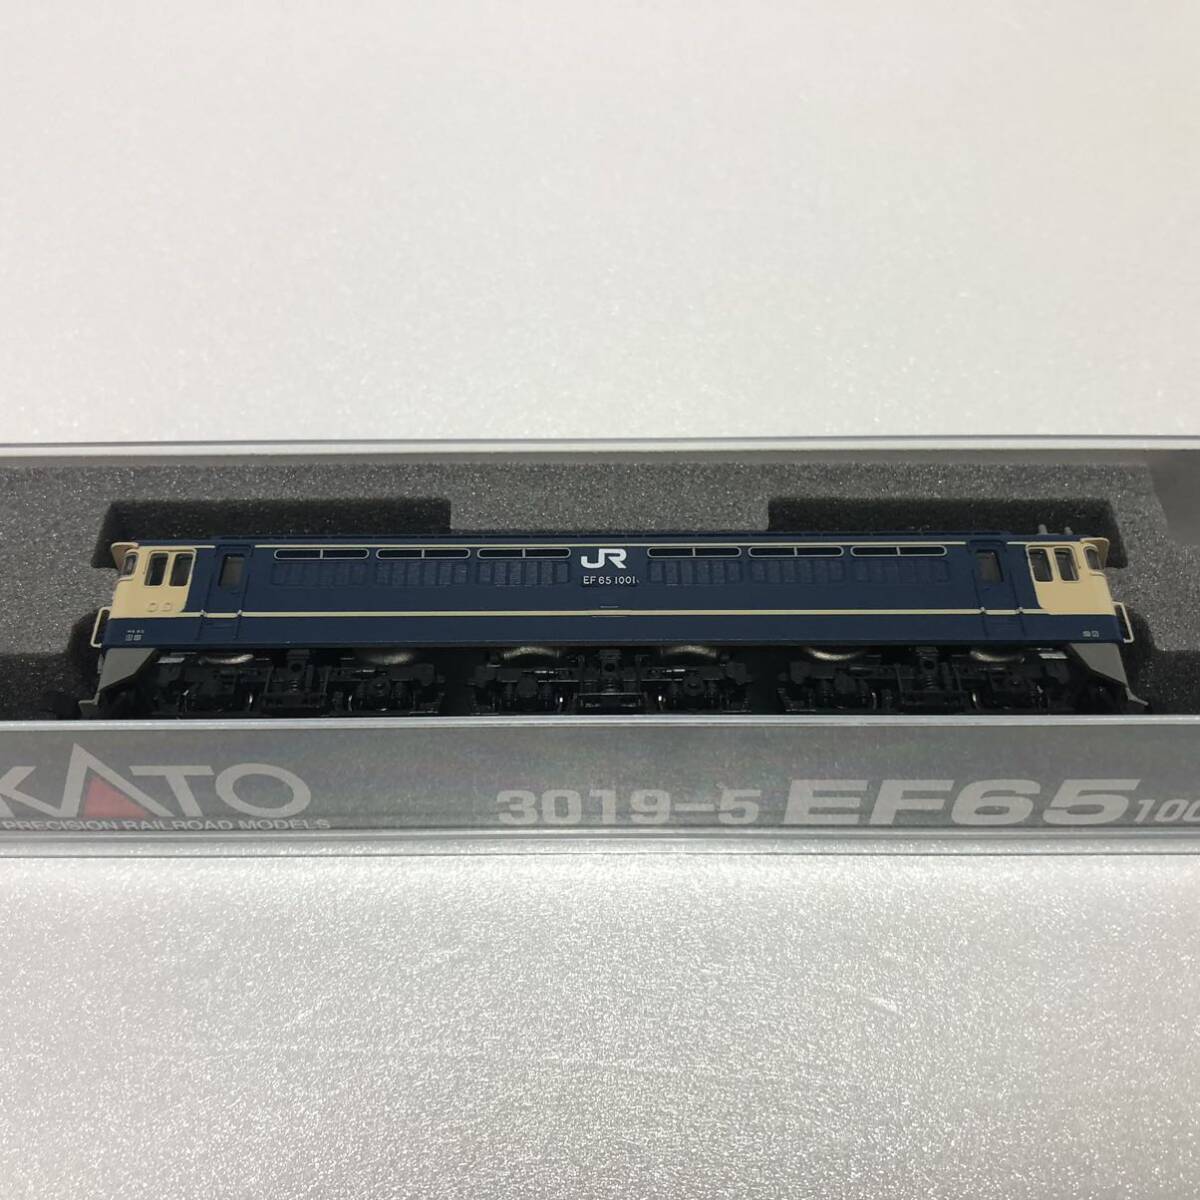 ★1円スタート★3019-5 EF65 1000 前期形 電気機関車 KATO_画像10